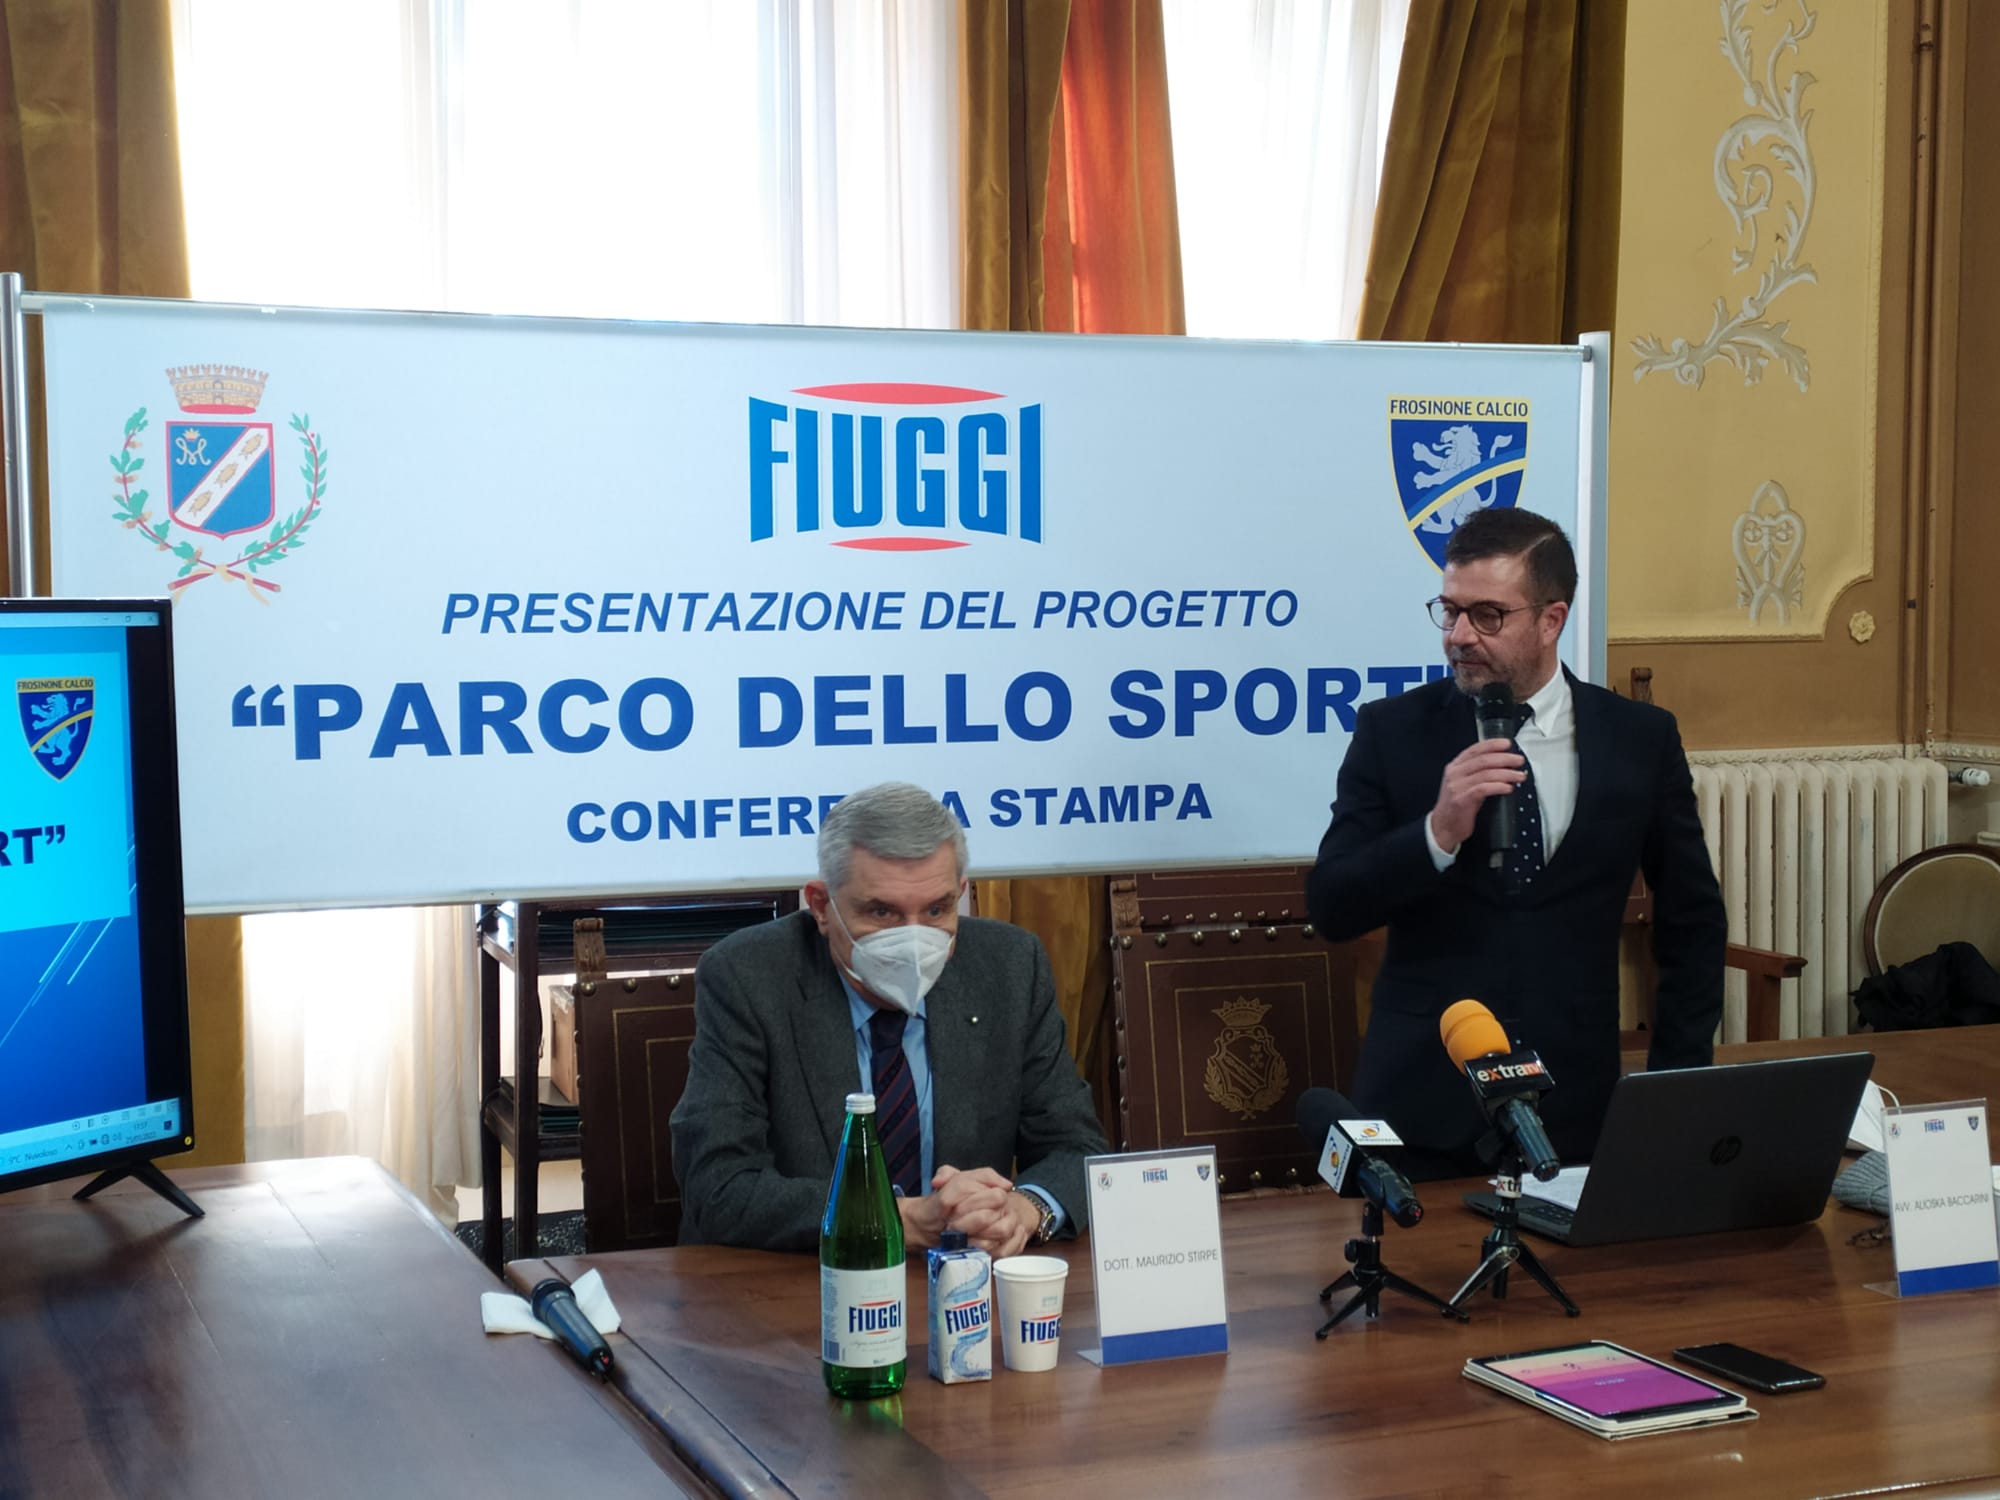 Fiuggi Presentato il Parco dello Sport Progetto del Frosinone calcio